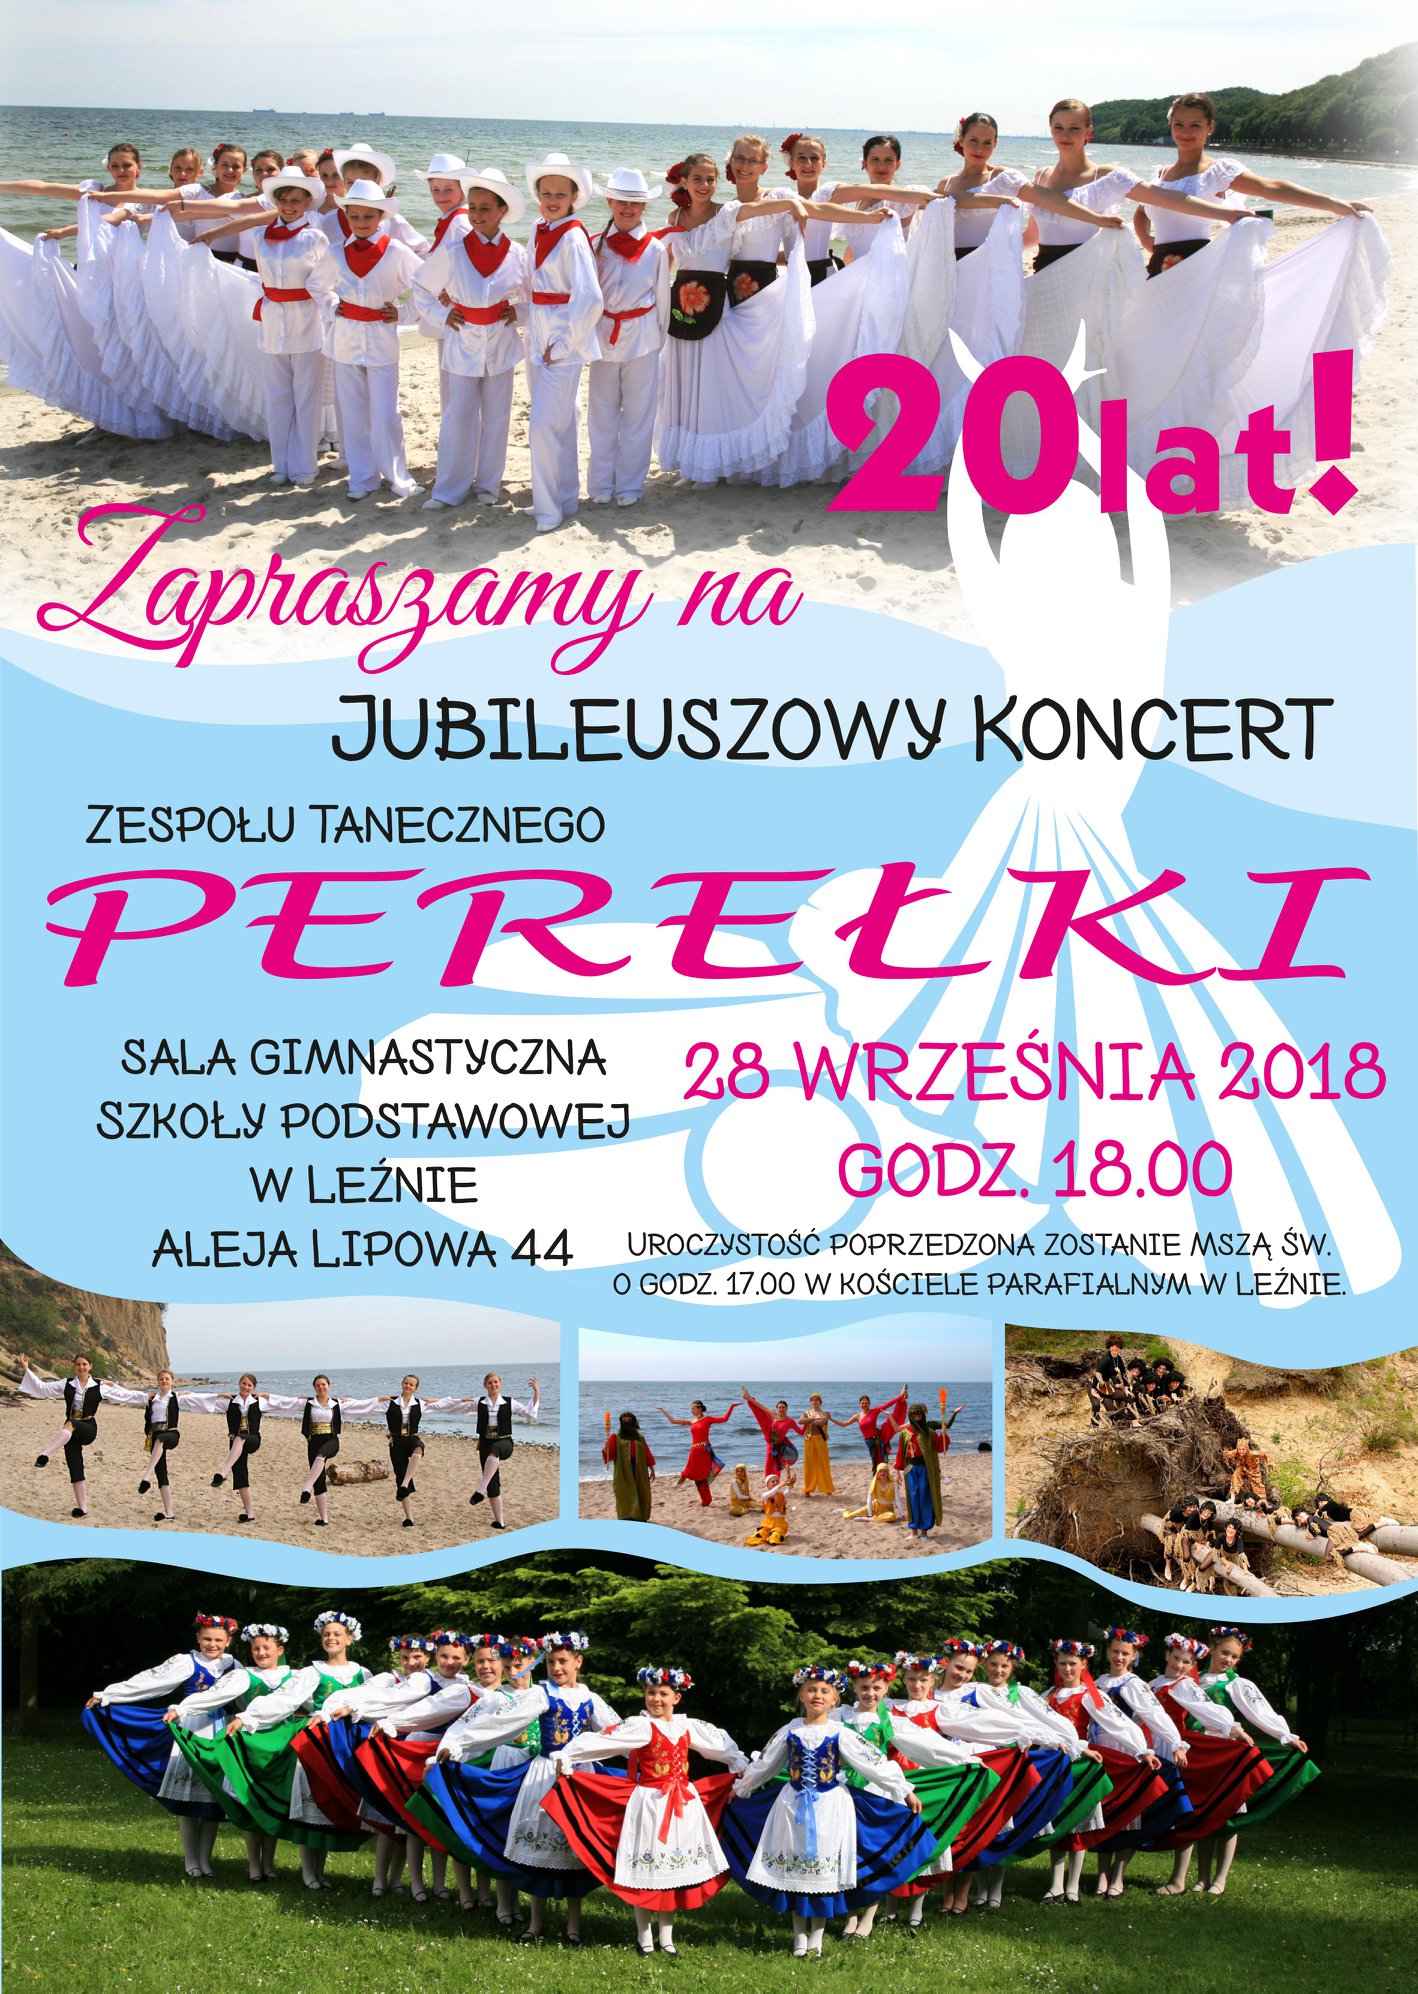 20 lat zespołu Perełki! Koncert